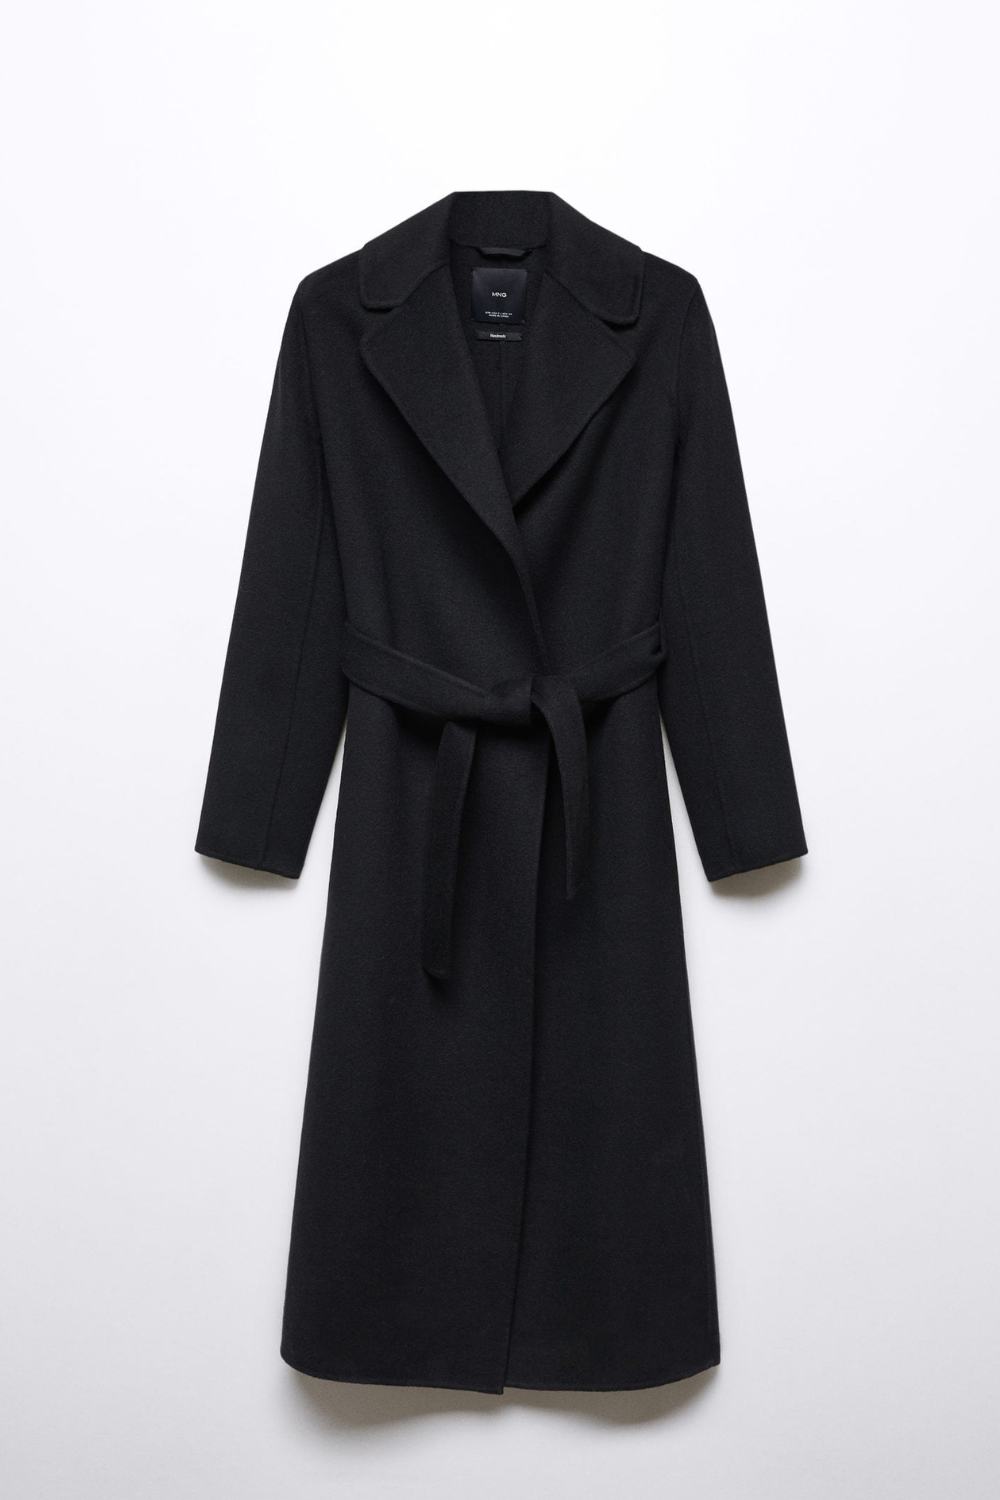 Mango Black Belted Coat